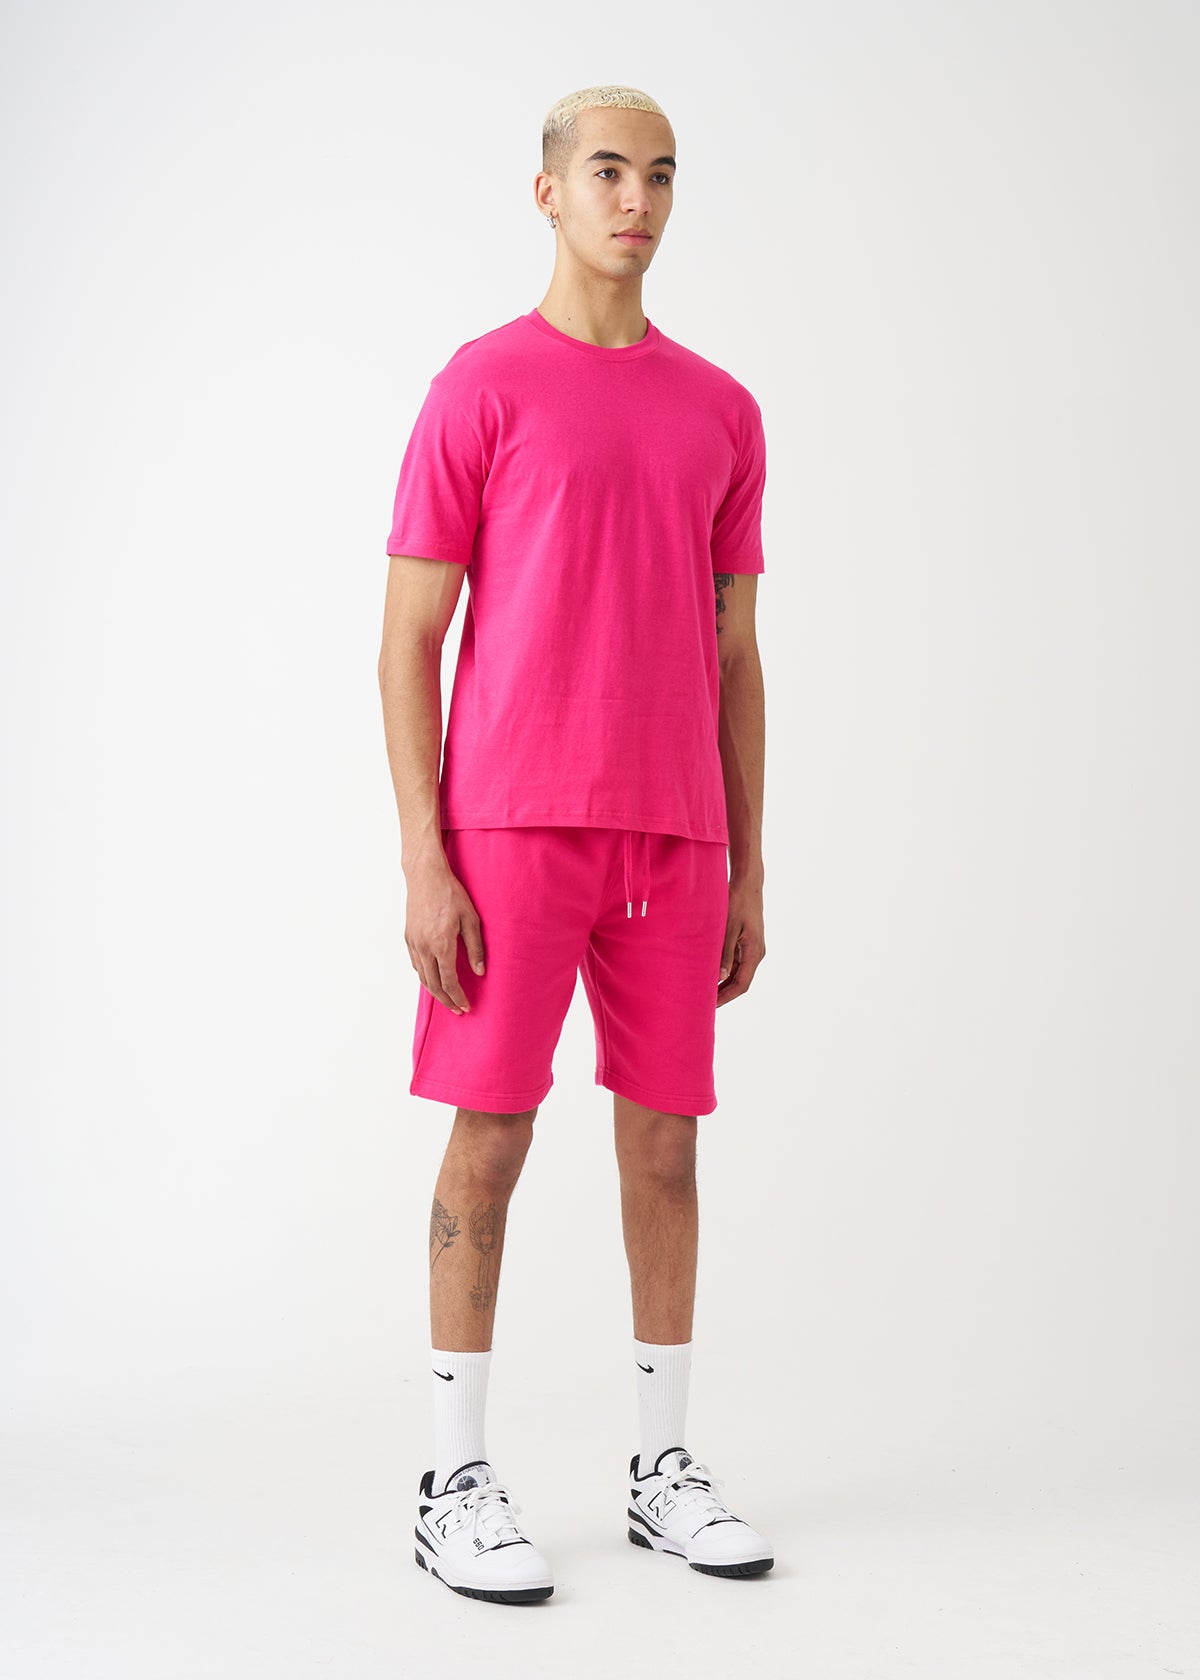 Hot Pink T-Shirt And Short Set